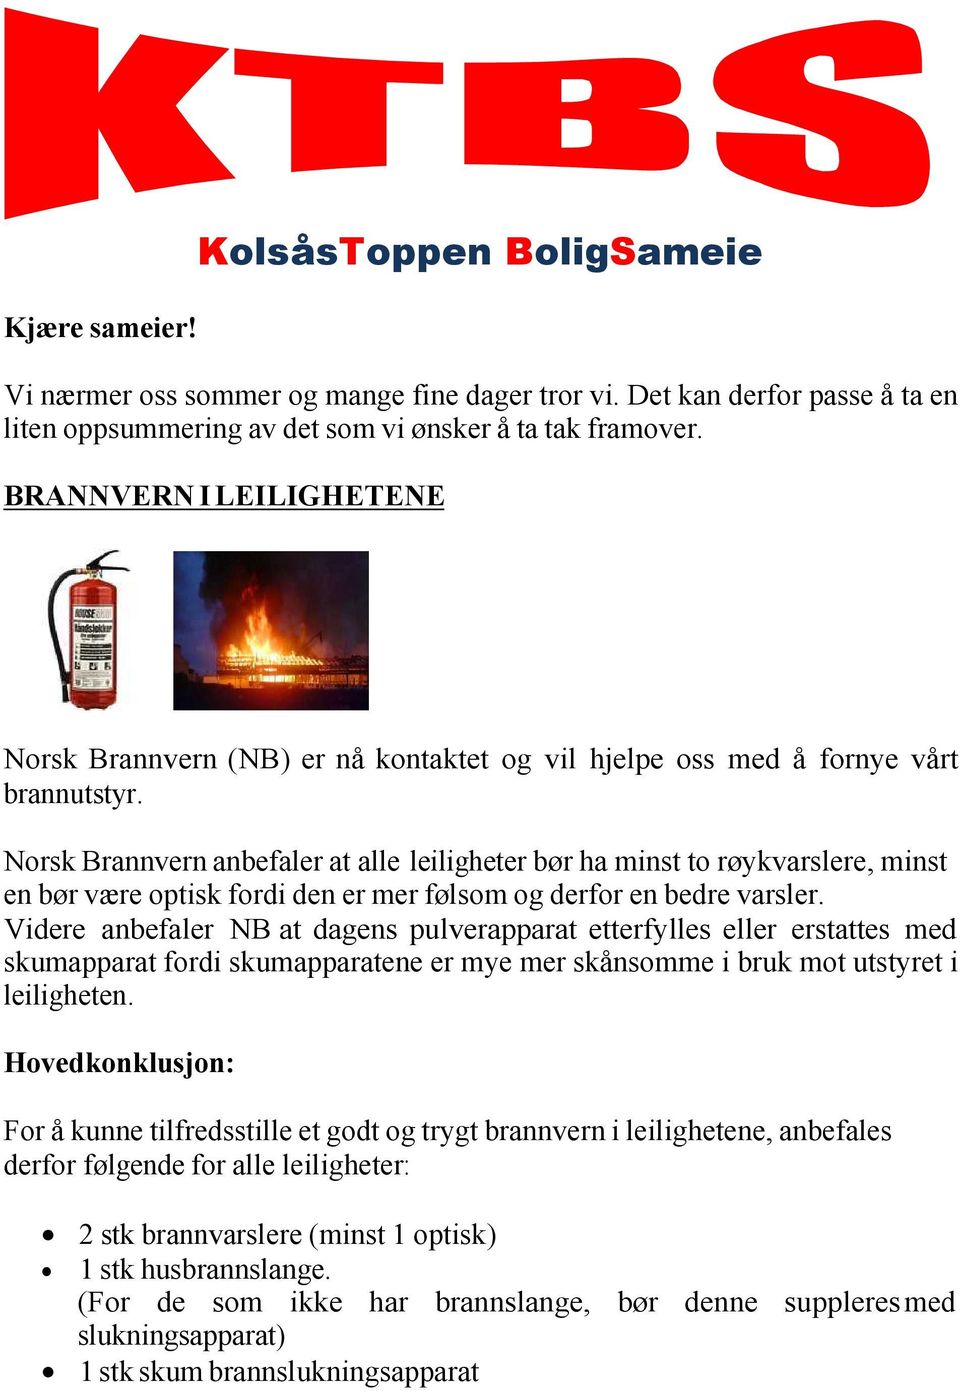 Norsk Brannvern anbefaler at alle leiligheter bør ha minst to røykvarslere, minst en bør være optisk fordi den er mer følsom og derfor en bedre varsler.